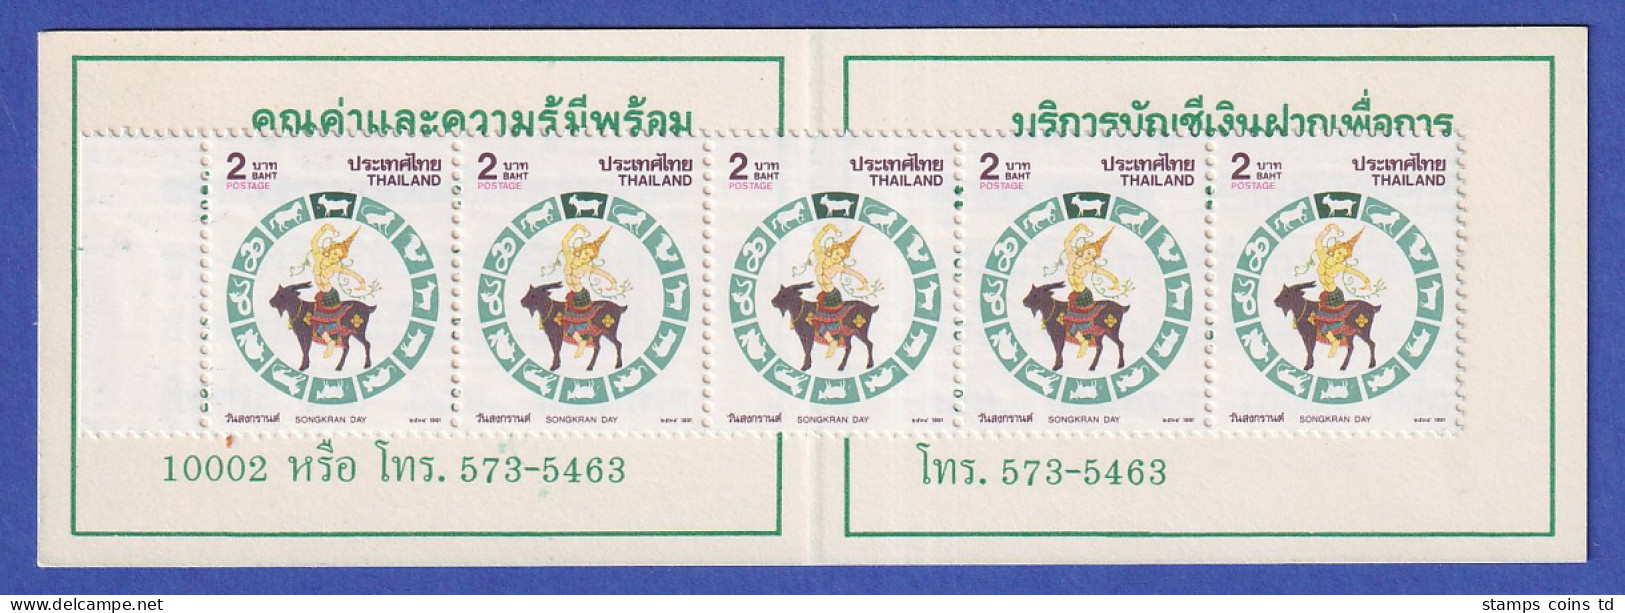 Thailand 1991 Songkran-Tag Mi.-Nr. 1410 A Markenheftchen Postfrisch ** / MNH - Thaïlande